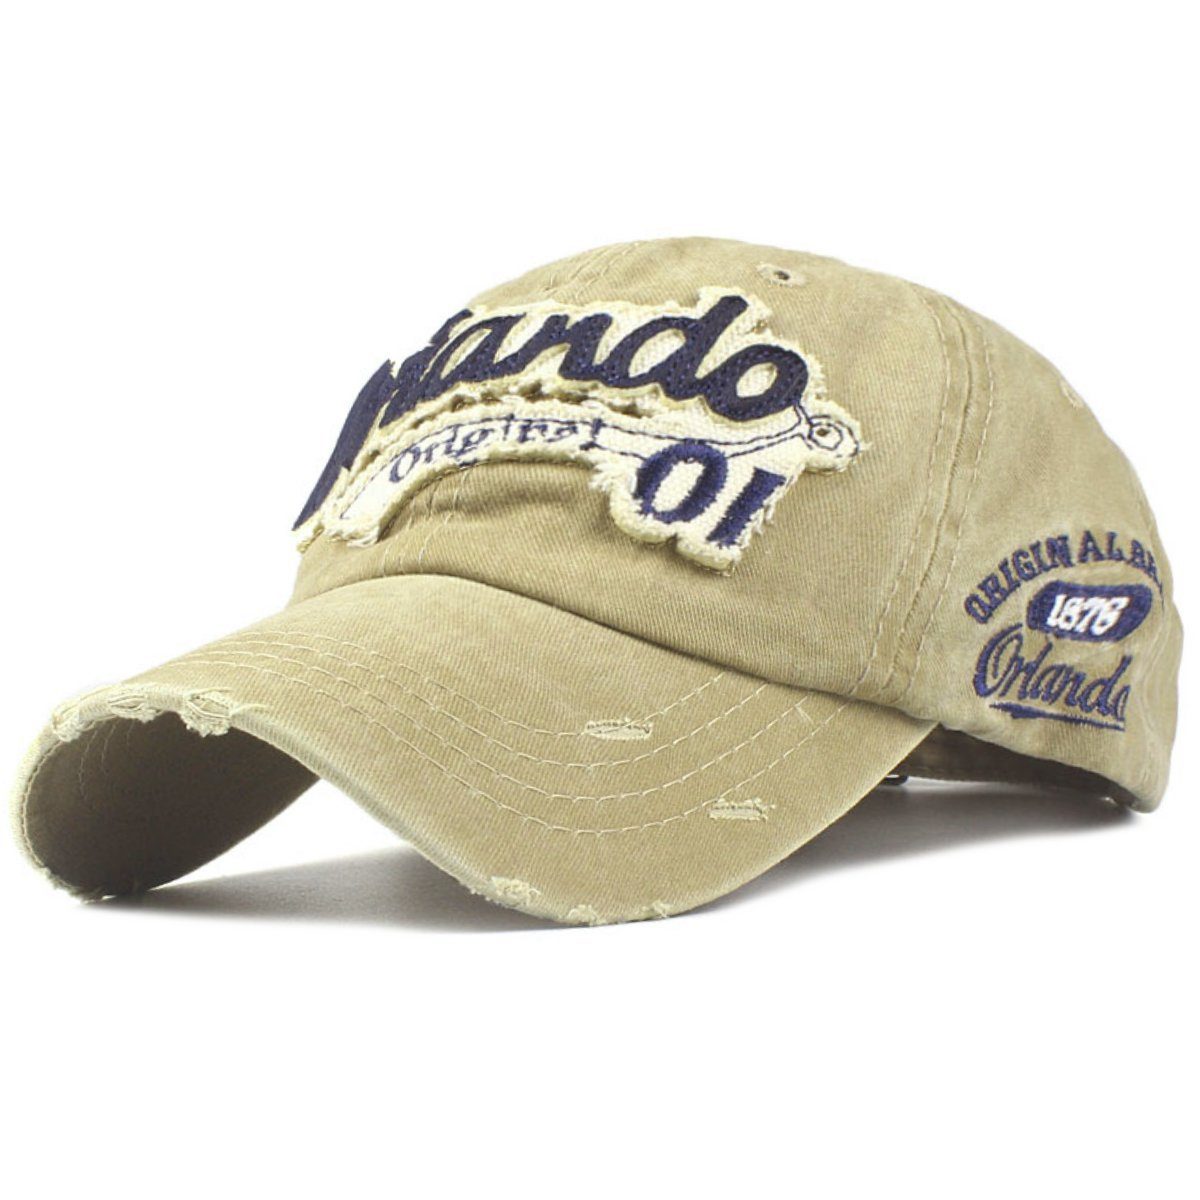 Sporty Baseball Vintage Baseballcap Cap Used khaki Style Retro Original Washed Look Orlando